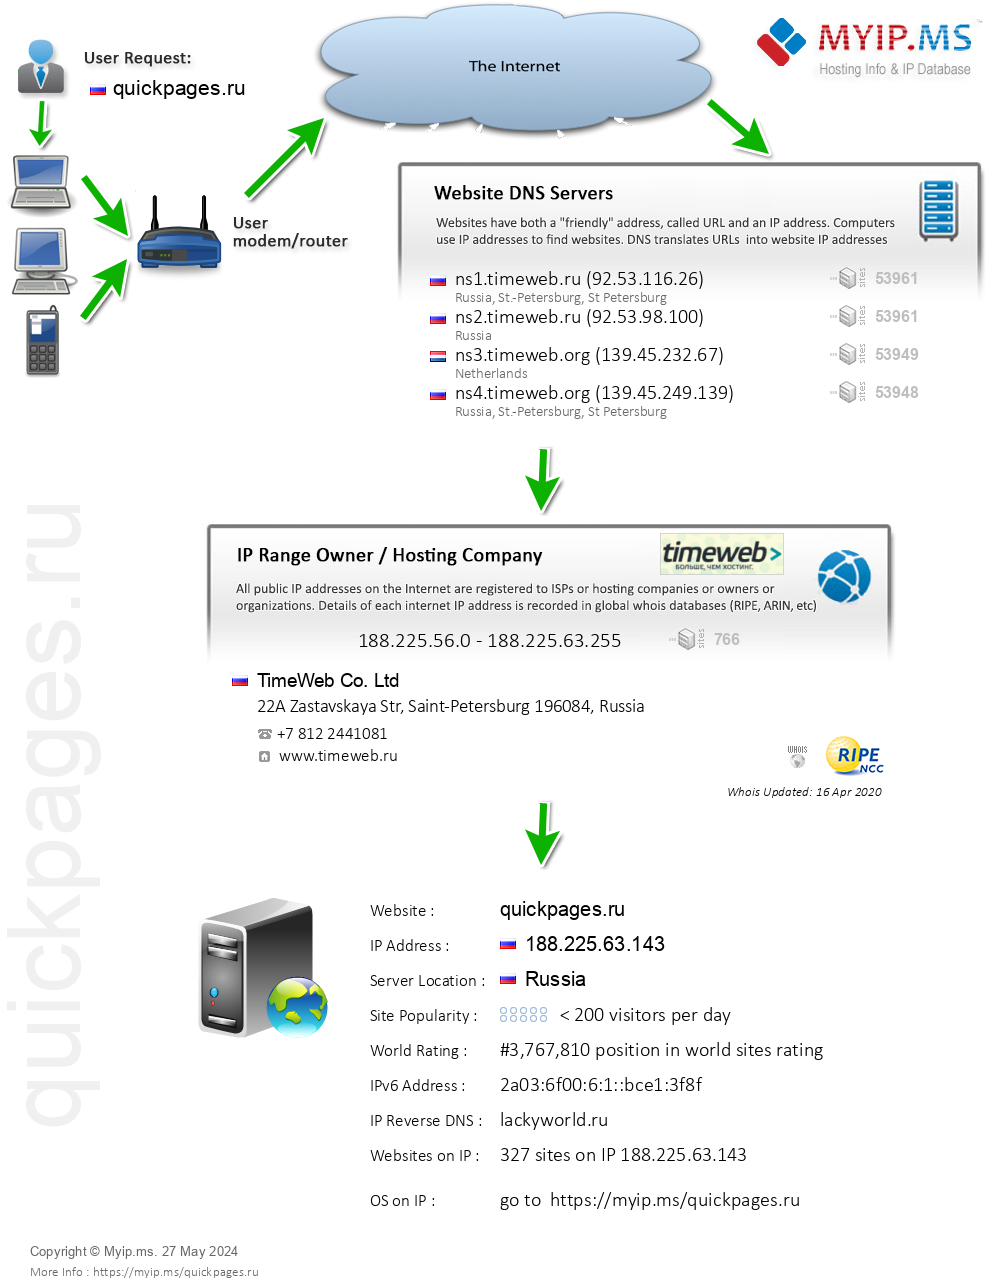 Quickpages.ru - Website Hosting Visual IP Diagram